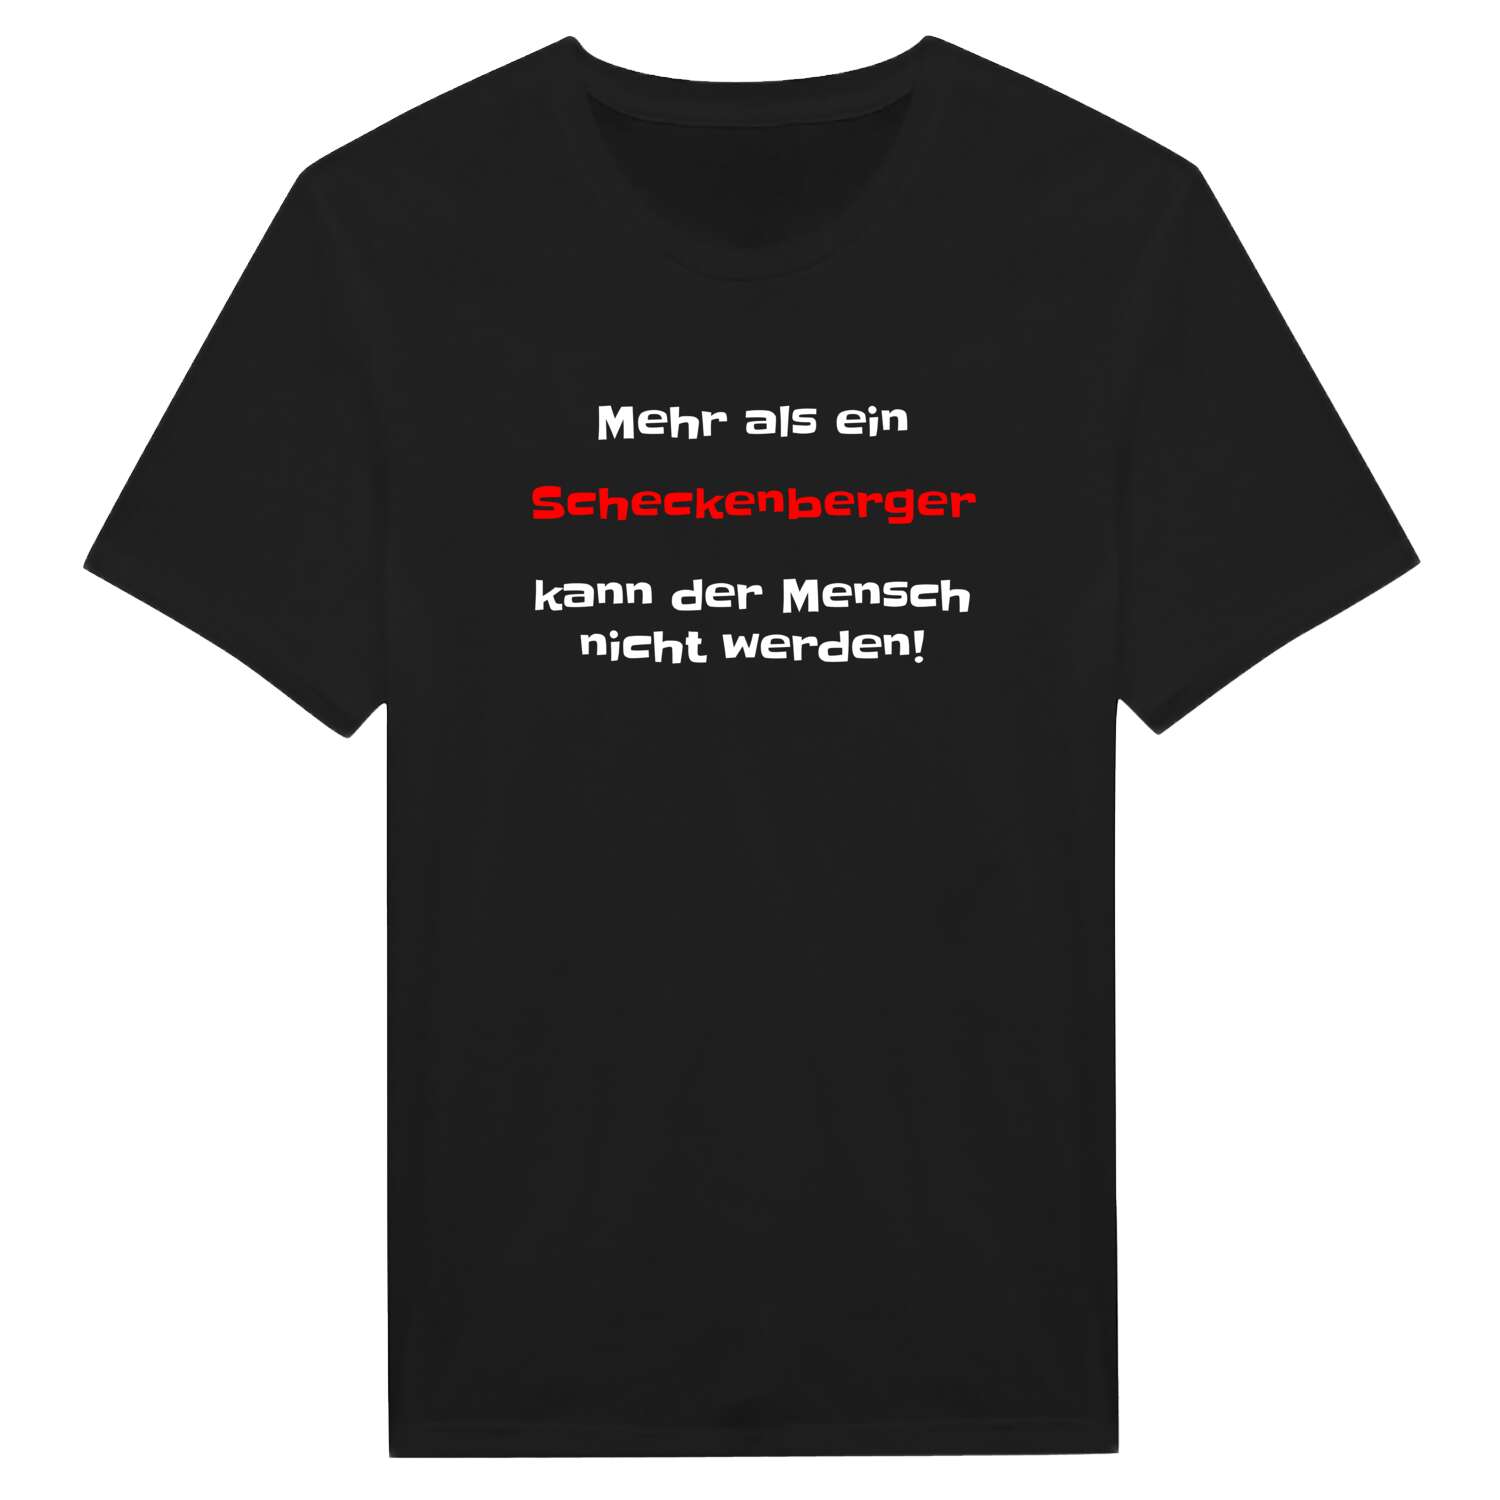 Scheckenberg T-Shirt »Mehr als ein«